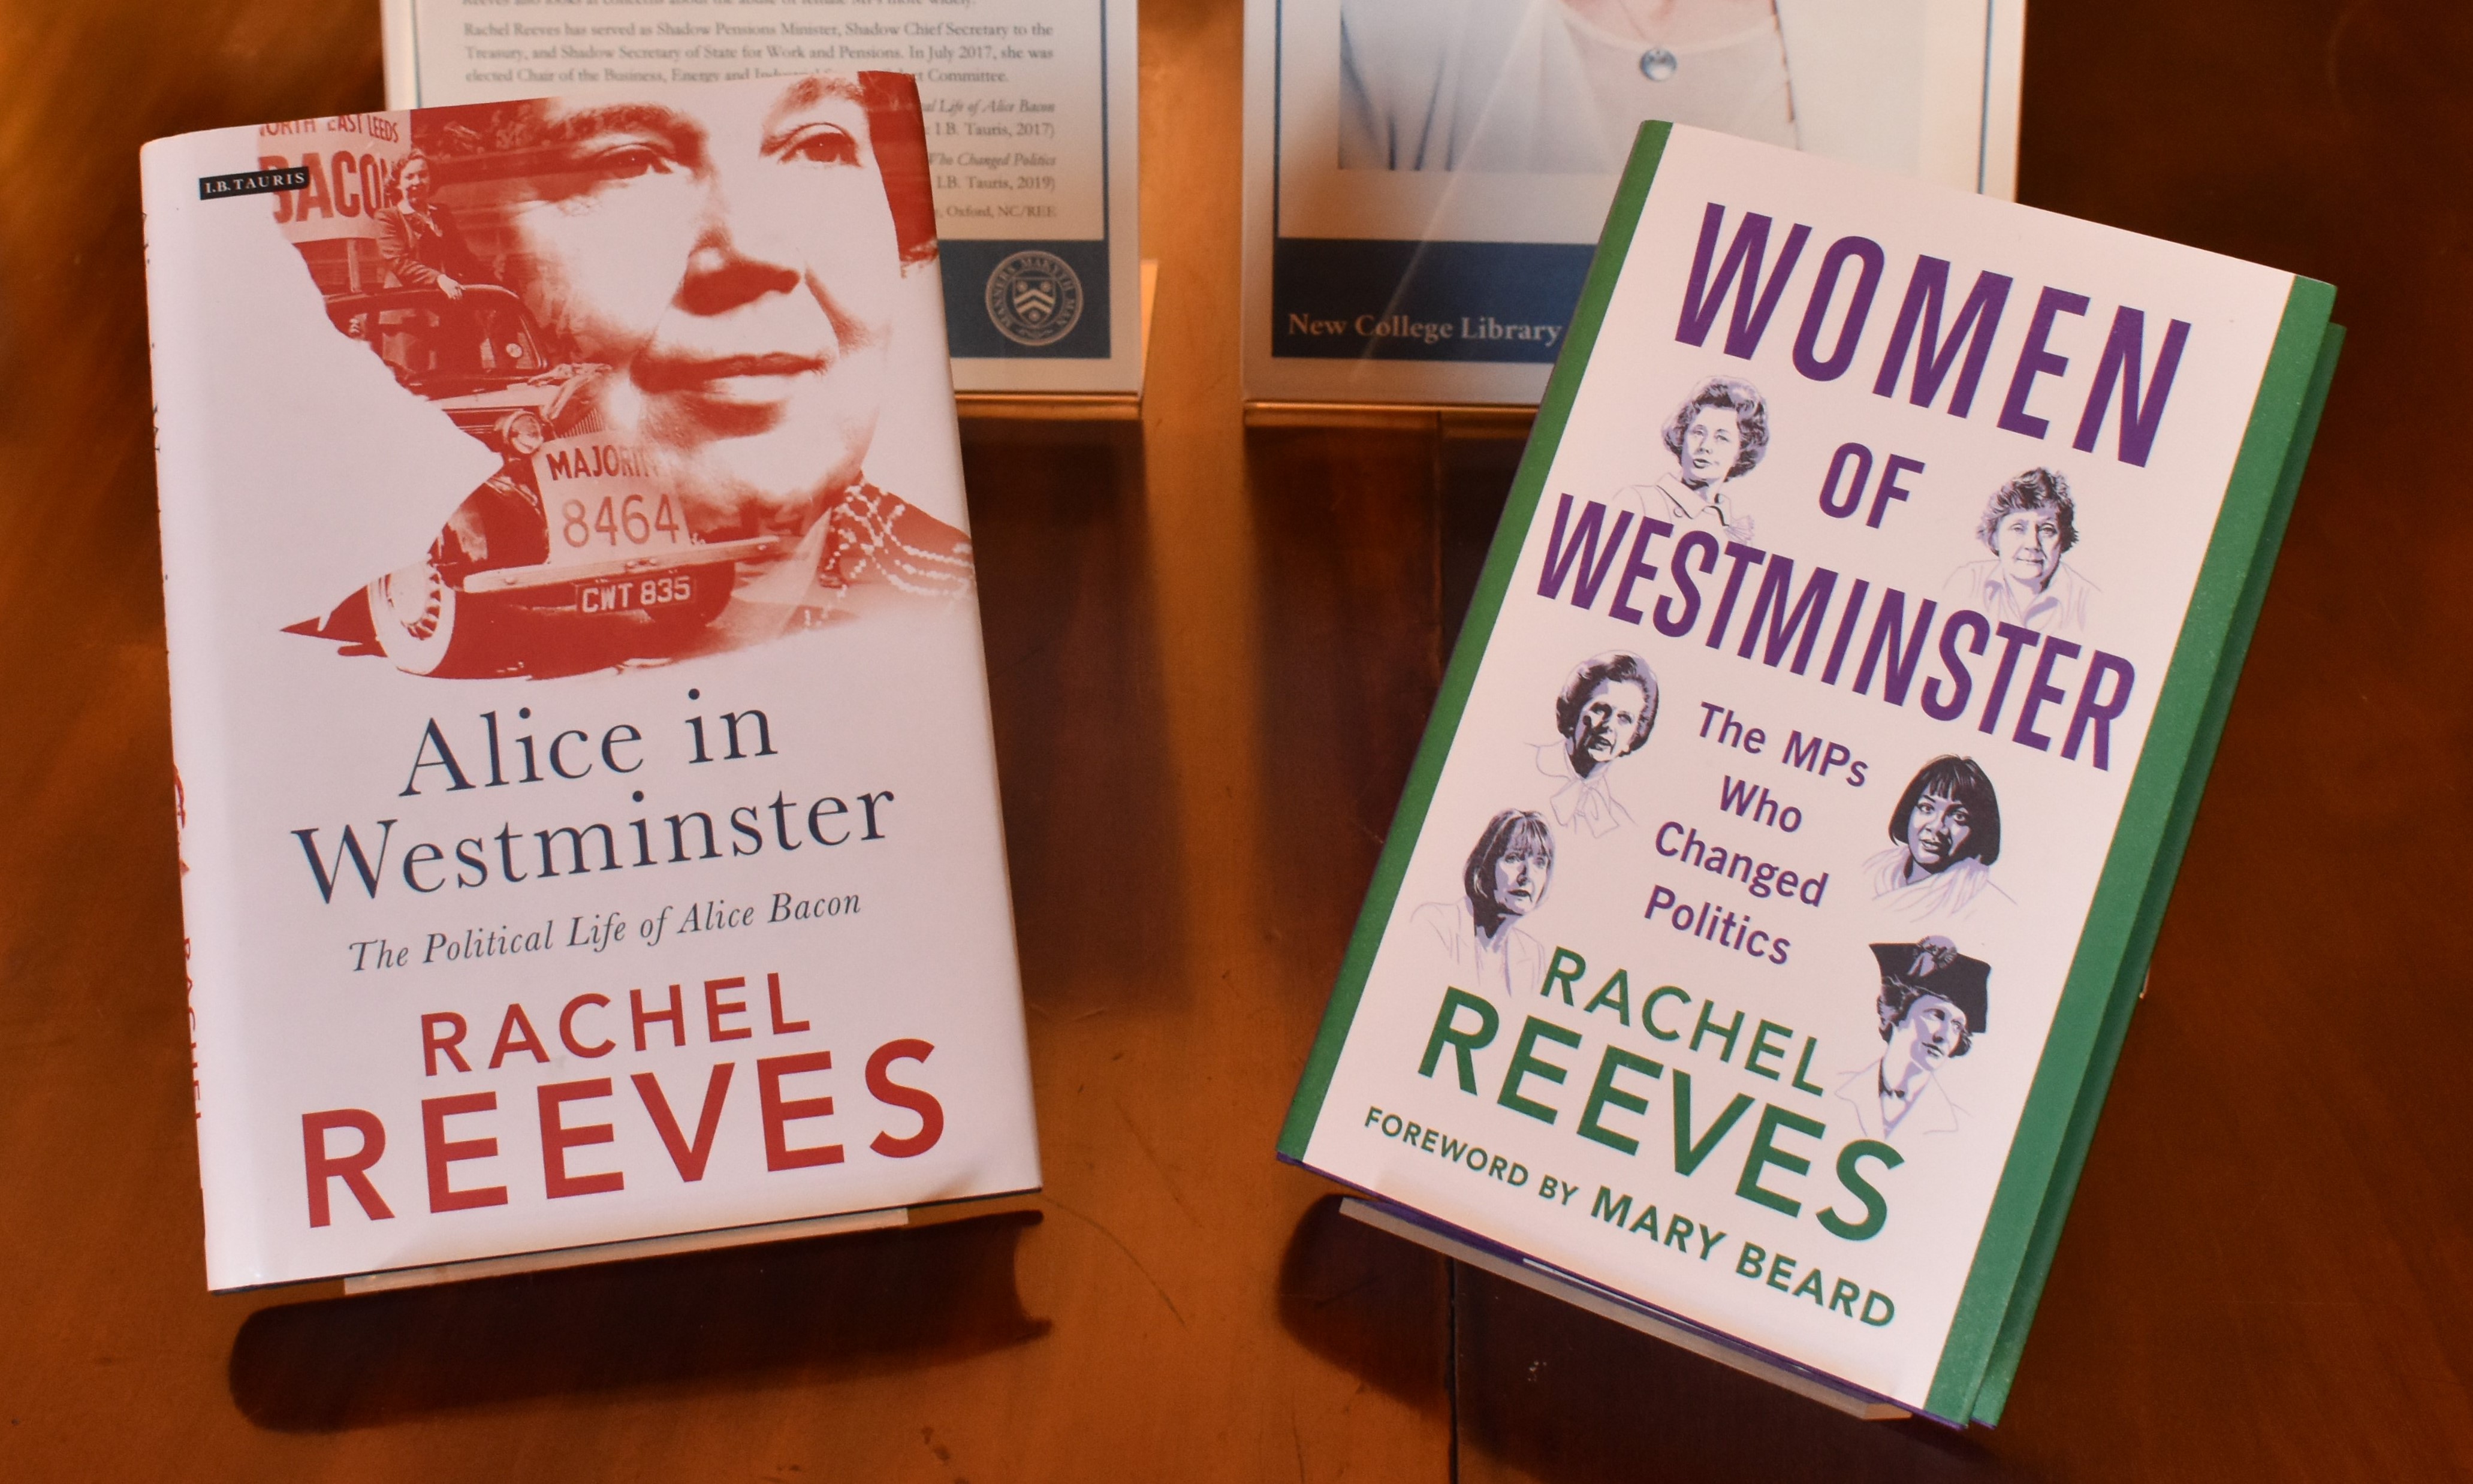 Works of Rachel Reeves